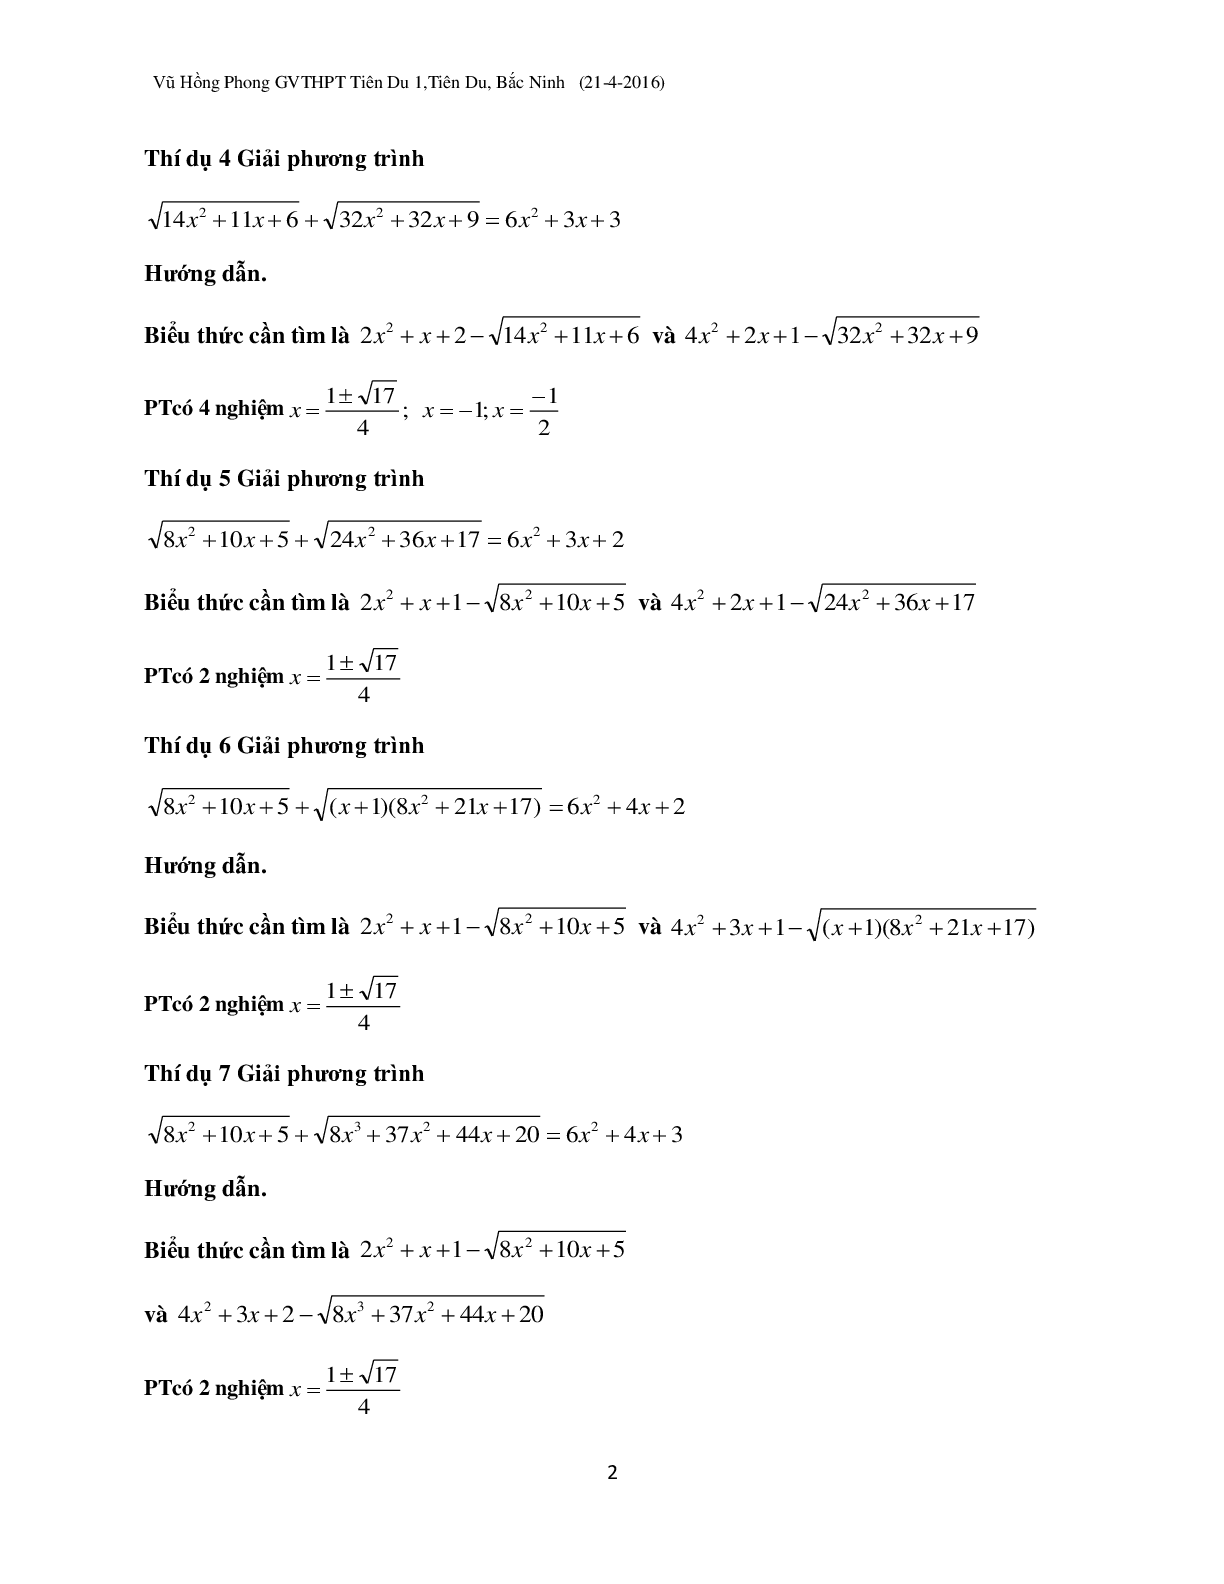 Kỹ thuật ‘đánh cả cụm’ khi dùng Casio giải phương trình vô tỉ (trang 2)